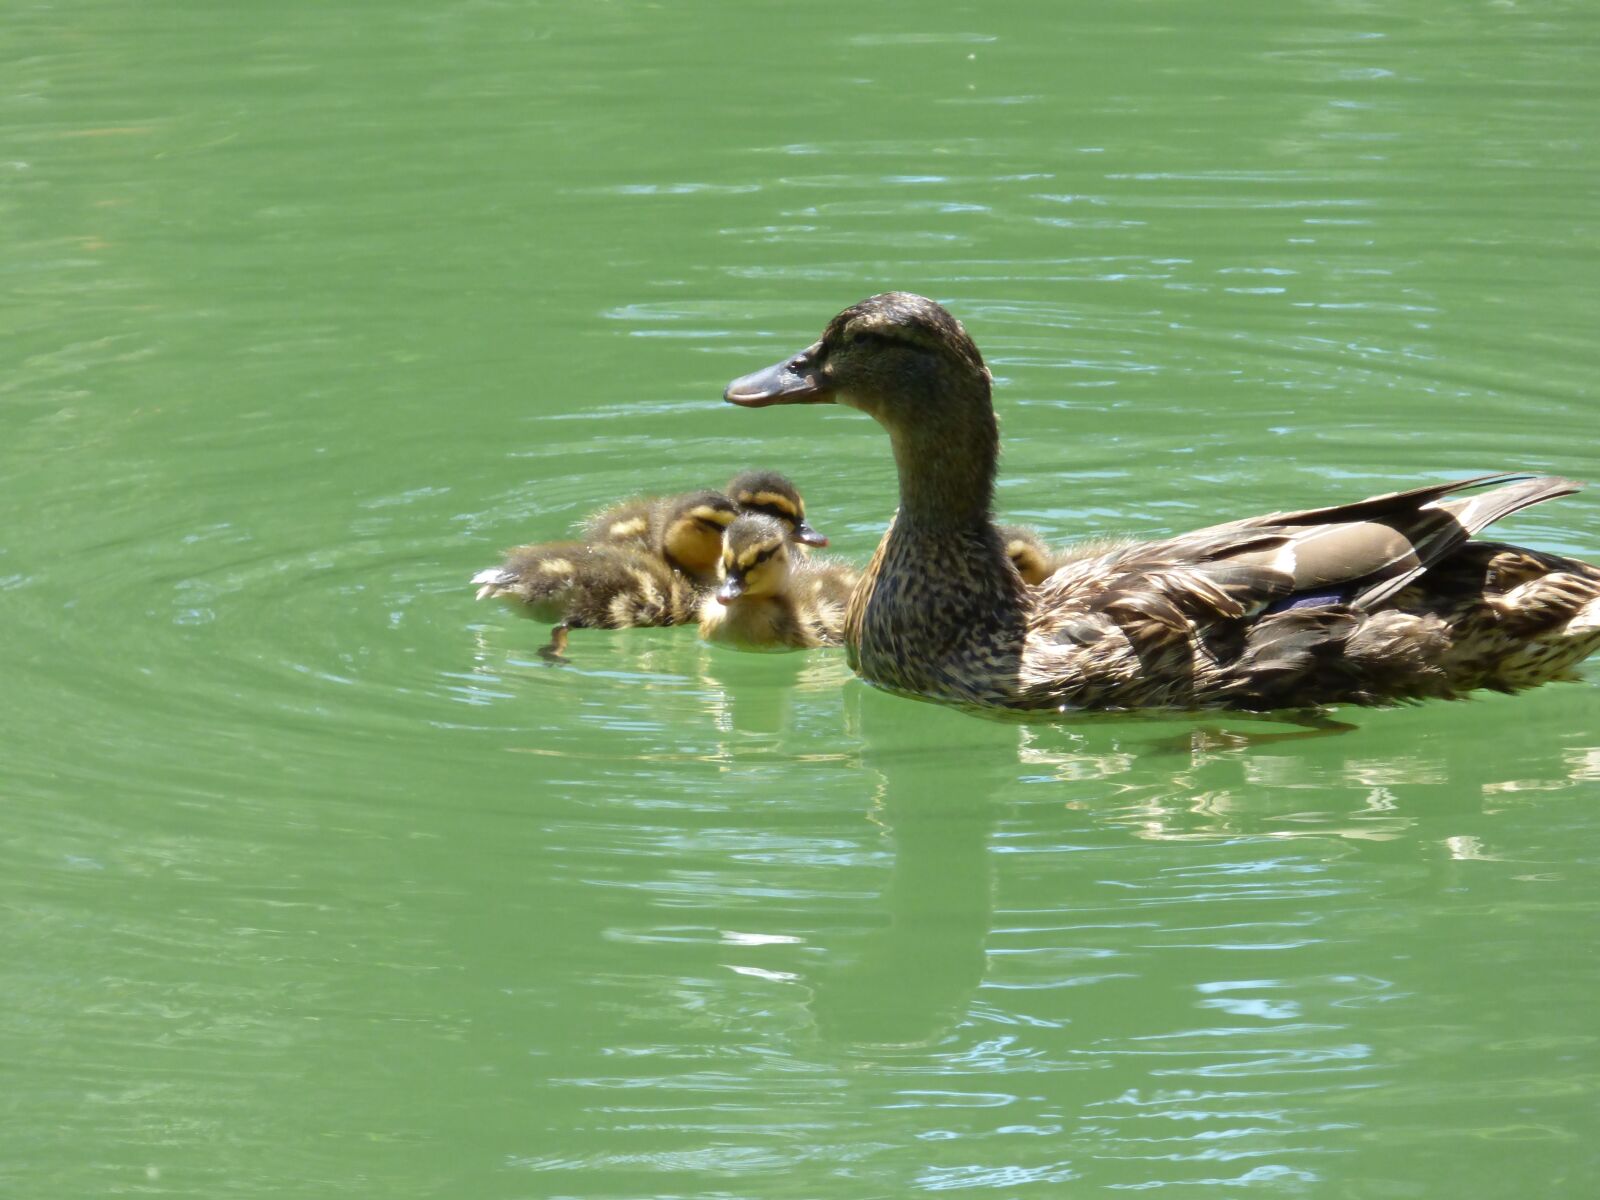 Panasonic Lumix DMC-FZ70 sample photo. Ducks, nature, baby duck photography